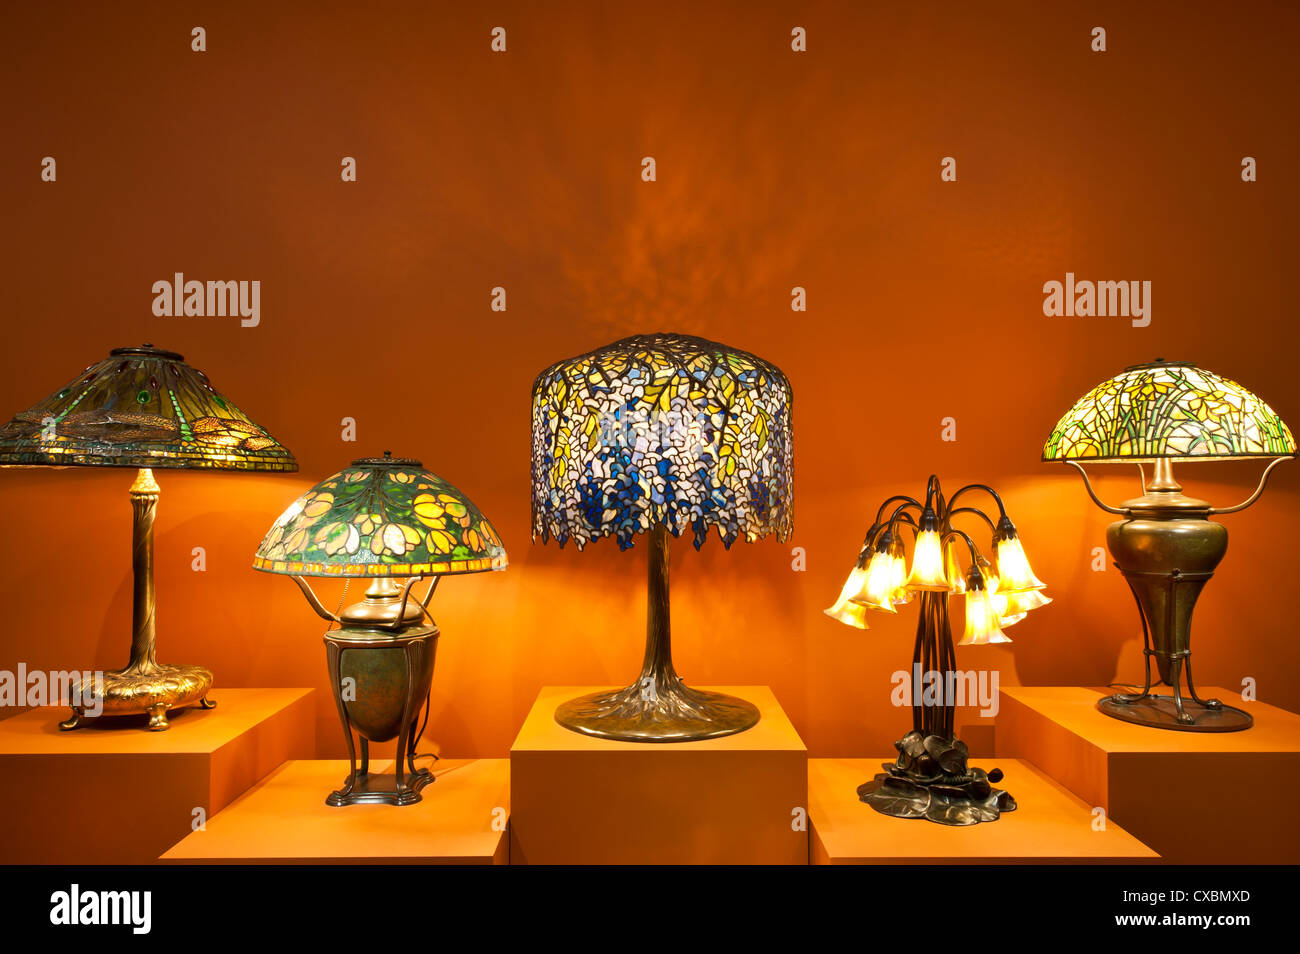 Lampes Tiffany, le Charles Hosmer Morse Museum, Winter Park, Floride, États-Unis d'Amérique, Amérique du Nord Banque D'Images